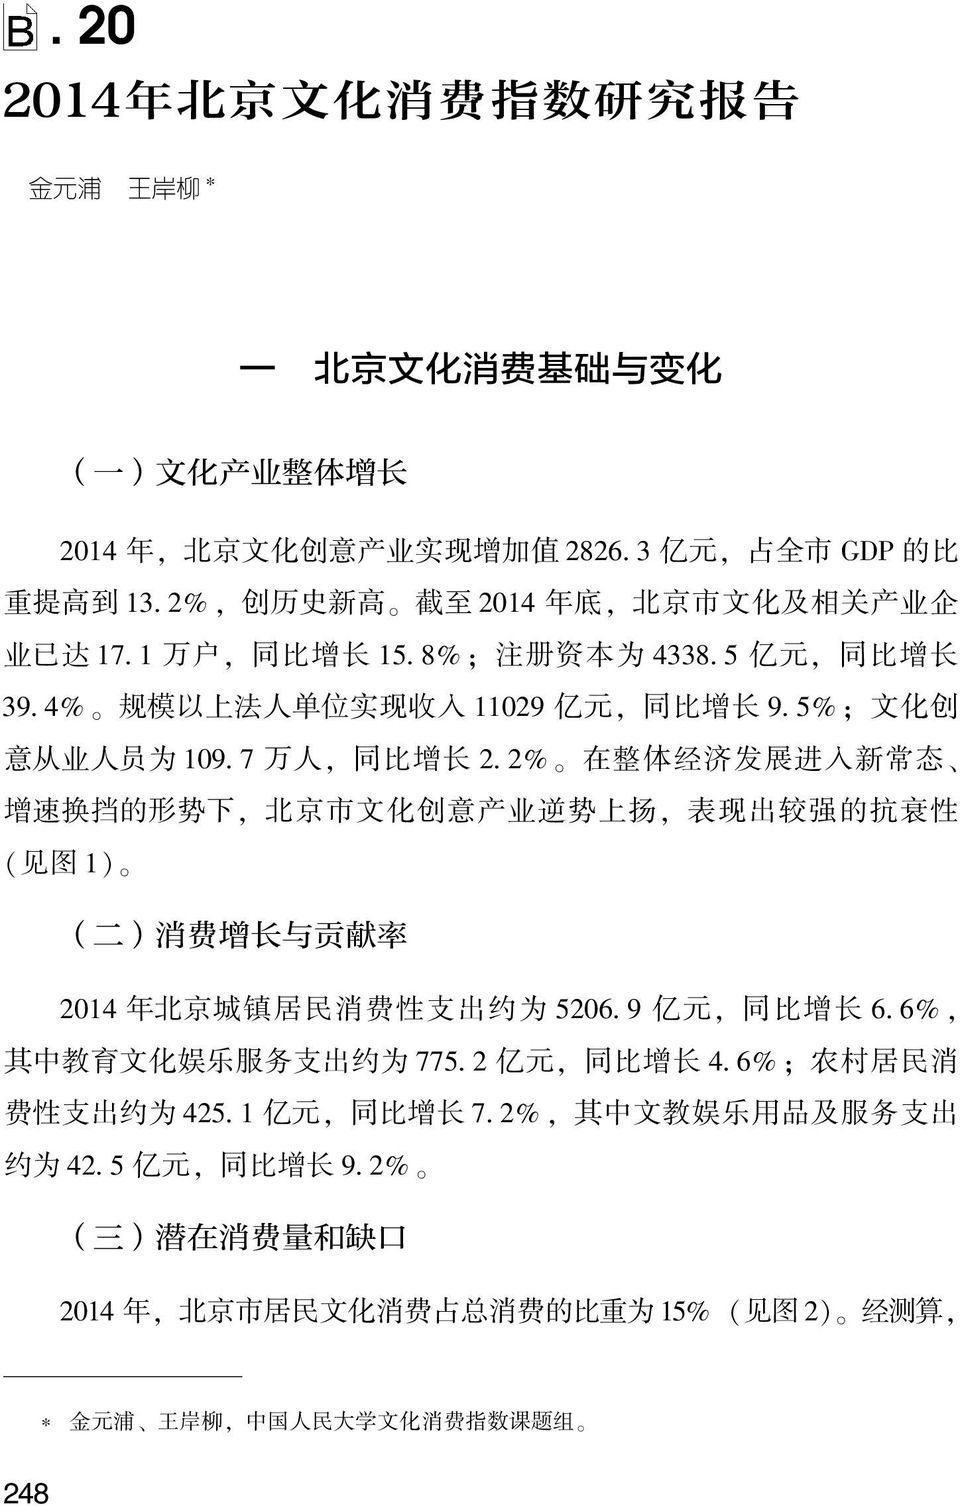 济 发 展 进 入 新 常 态 增 速 换 挡 的 形 势 下, 北 京 市 文 化 创 意 产 业 逆 势 上 扬, 表 现 出 较 强 的 抗 衰 性 ( 见 图 1) ( 二 ) 消 费 增 长 与 贡 献 率 2014 年 北 京 城 镇 居 民 消 费 性 支 出 约 为 5206 9 亿 元, 同 比 增 长 6 6%, 其 中 教 育 文 化 娱 乐 服 务 支 出 约 为 775